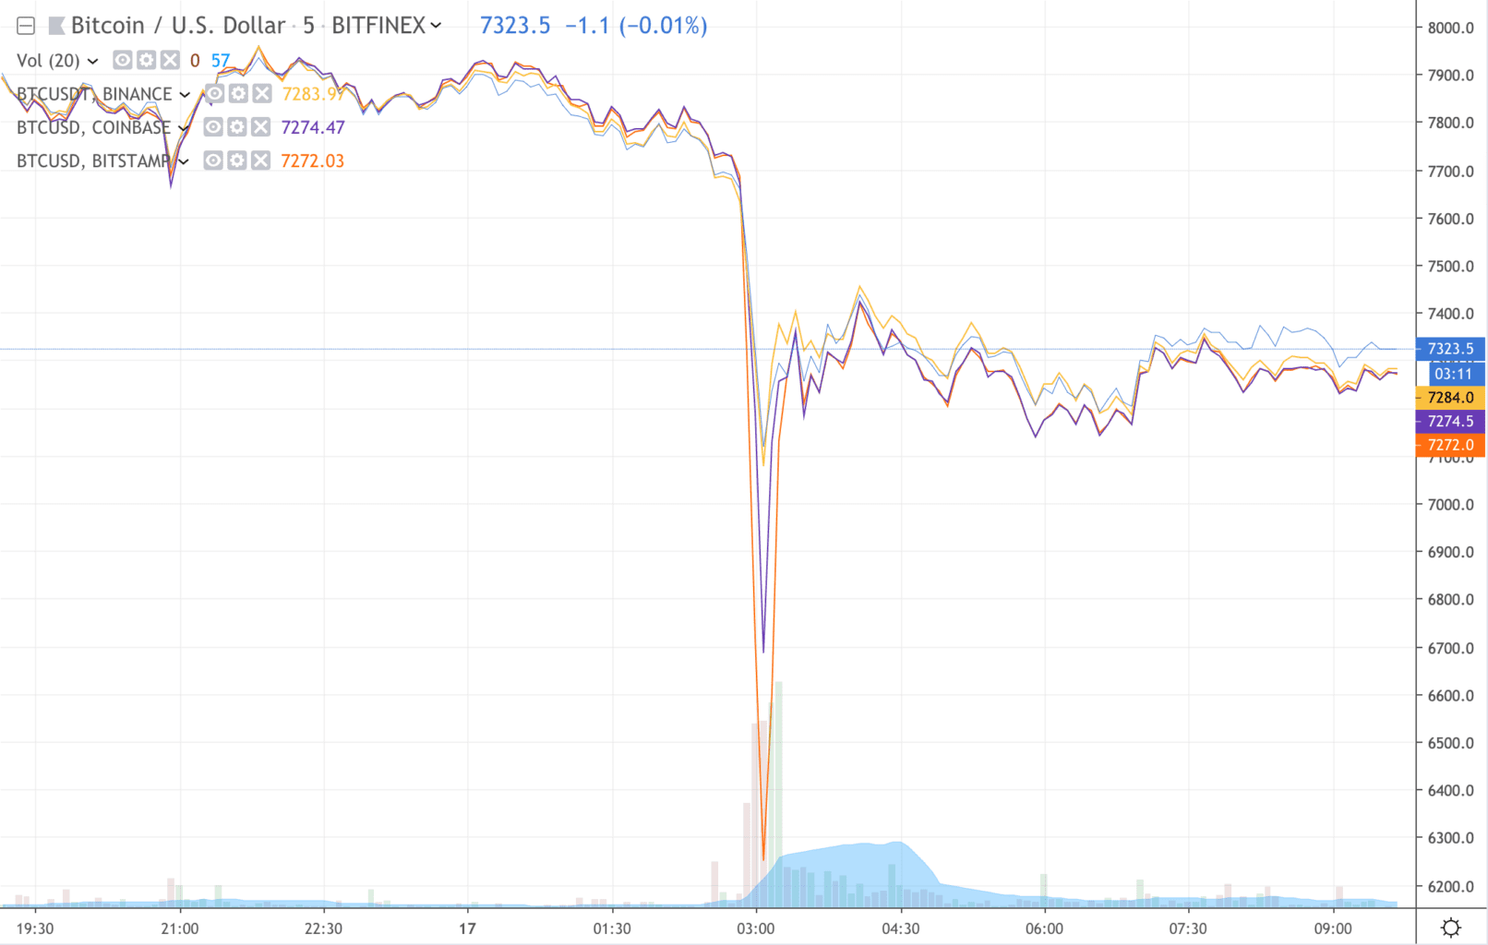 'Bitcoin's snelle herstel bevestiging bullmarkt', aldus Arthur Hayes (ceo BitMEX)